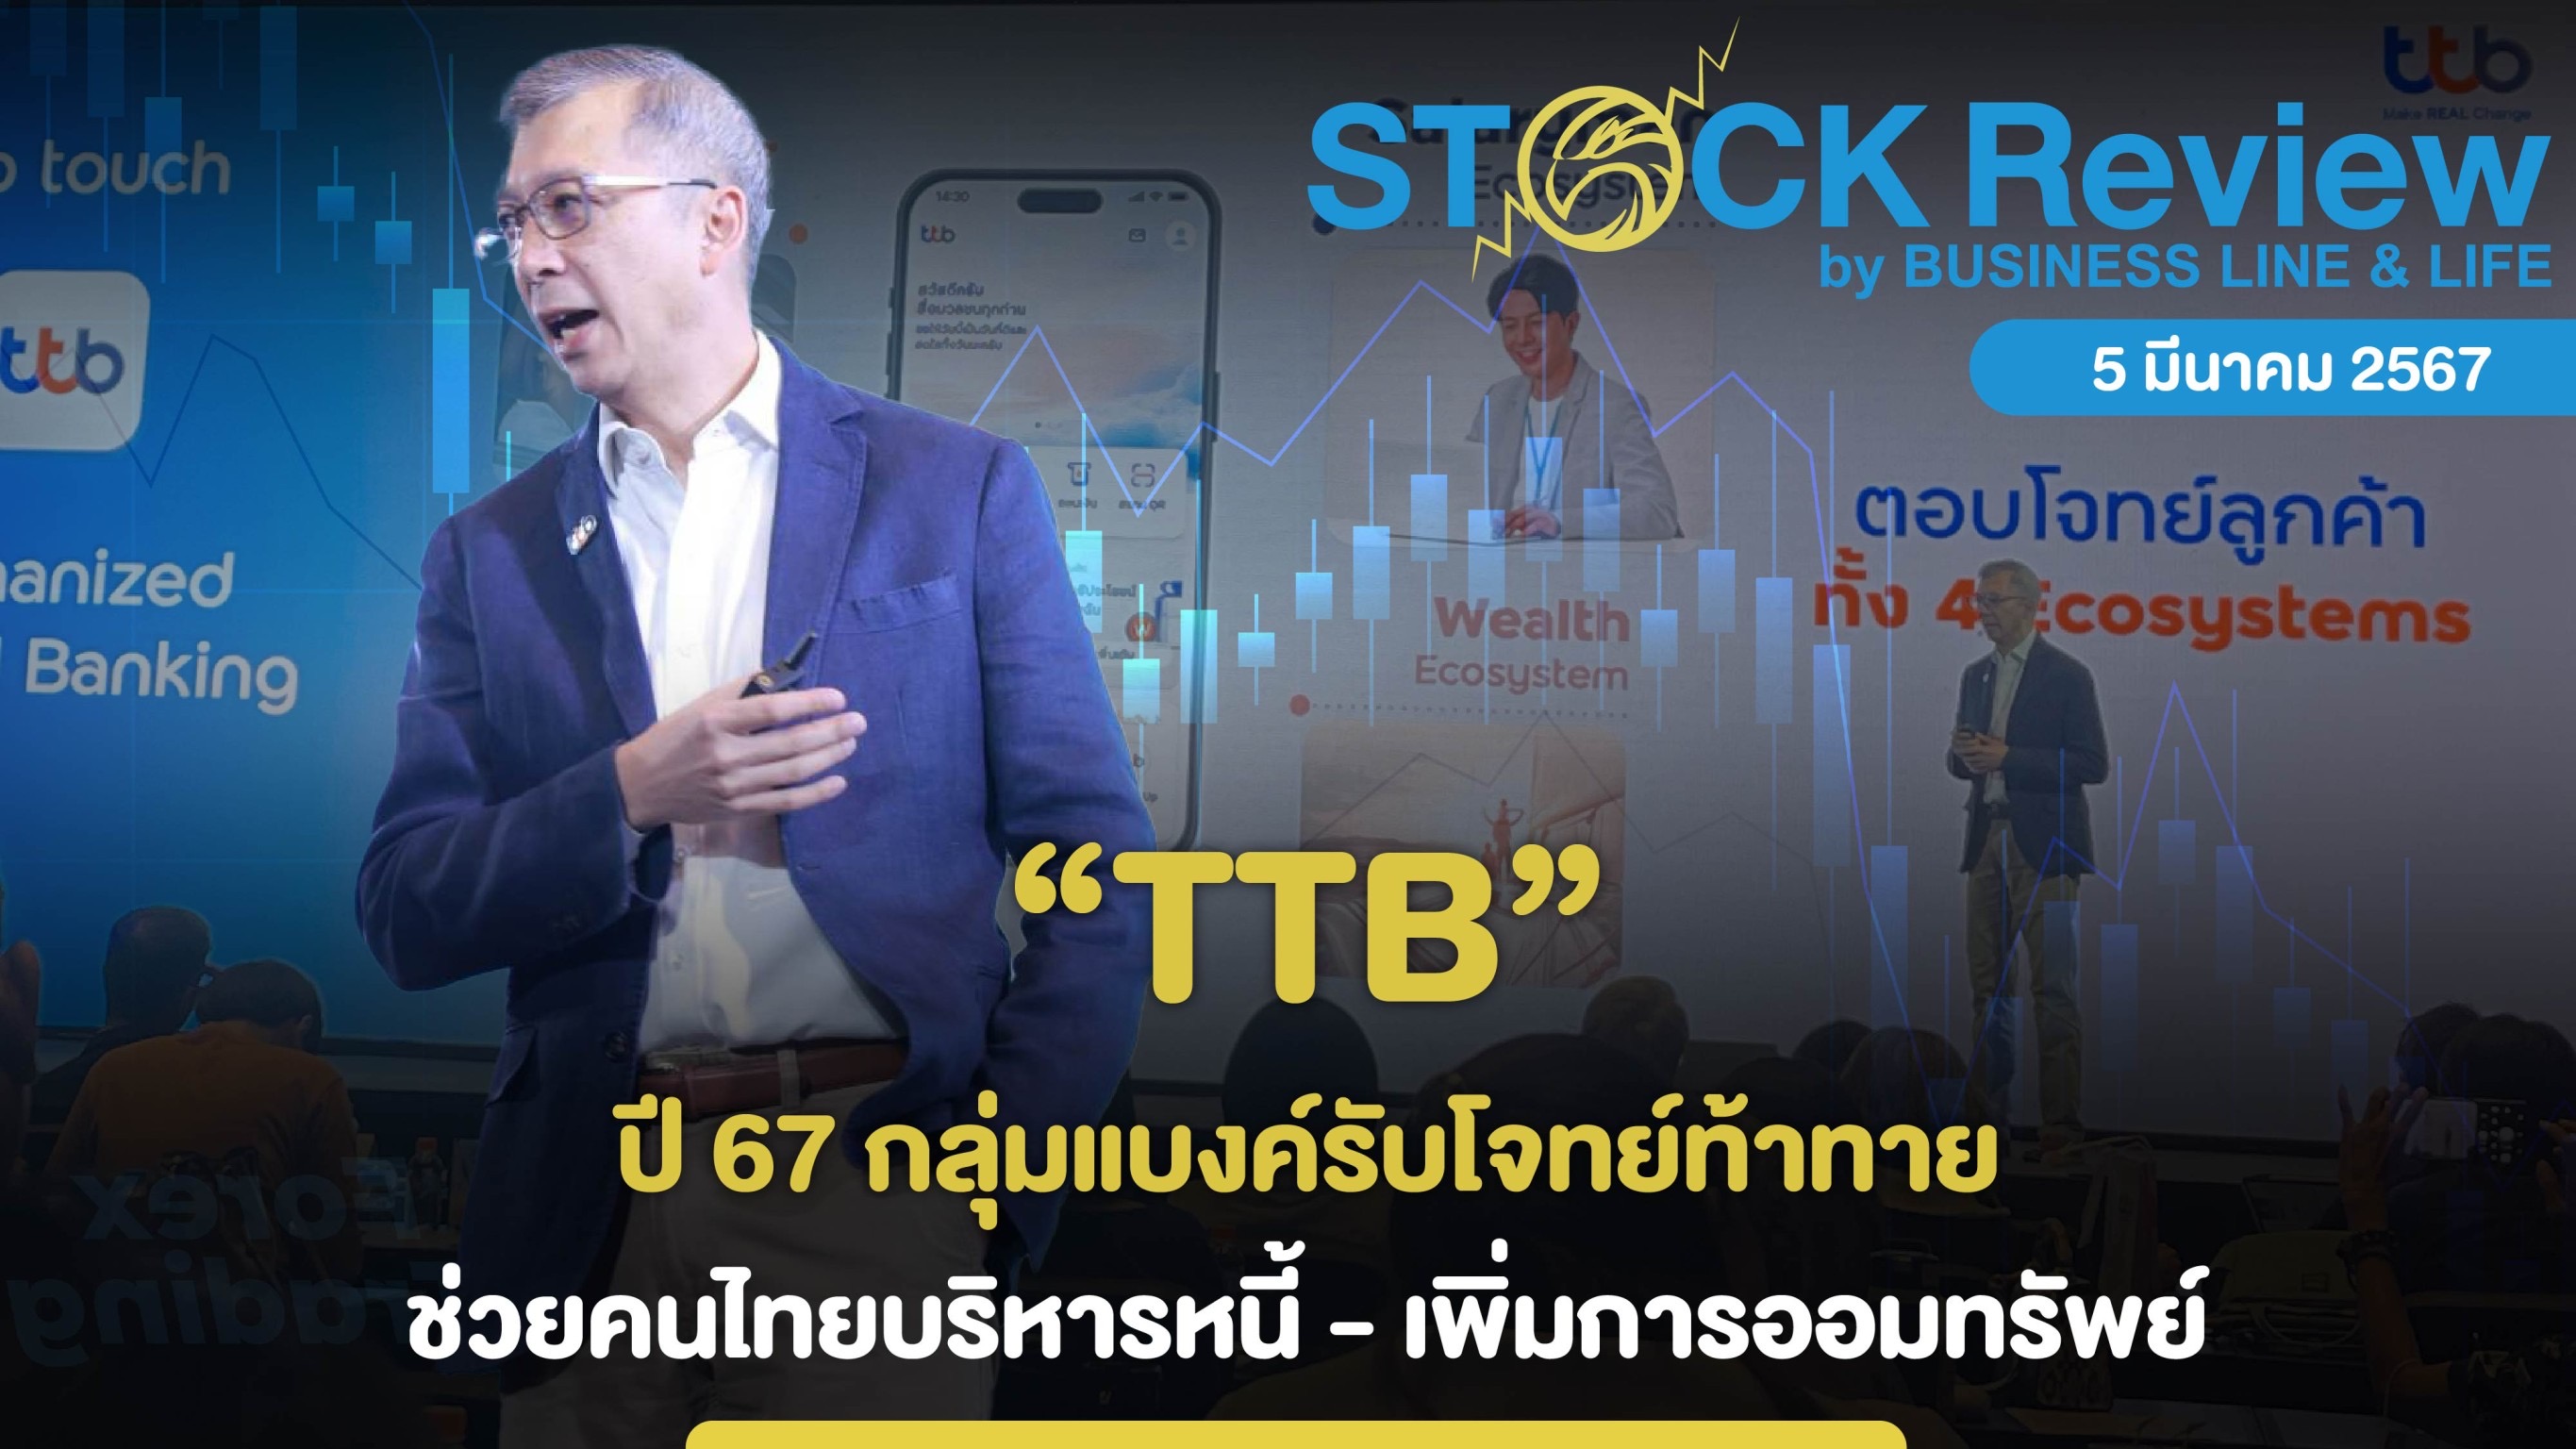 TTB ปี 67 กลุ่มแบงค์รับโจทย์ท้าทาย ช่วยคนไทยบริหารหนี้ เพิ่มการออมทรัพย์